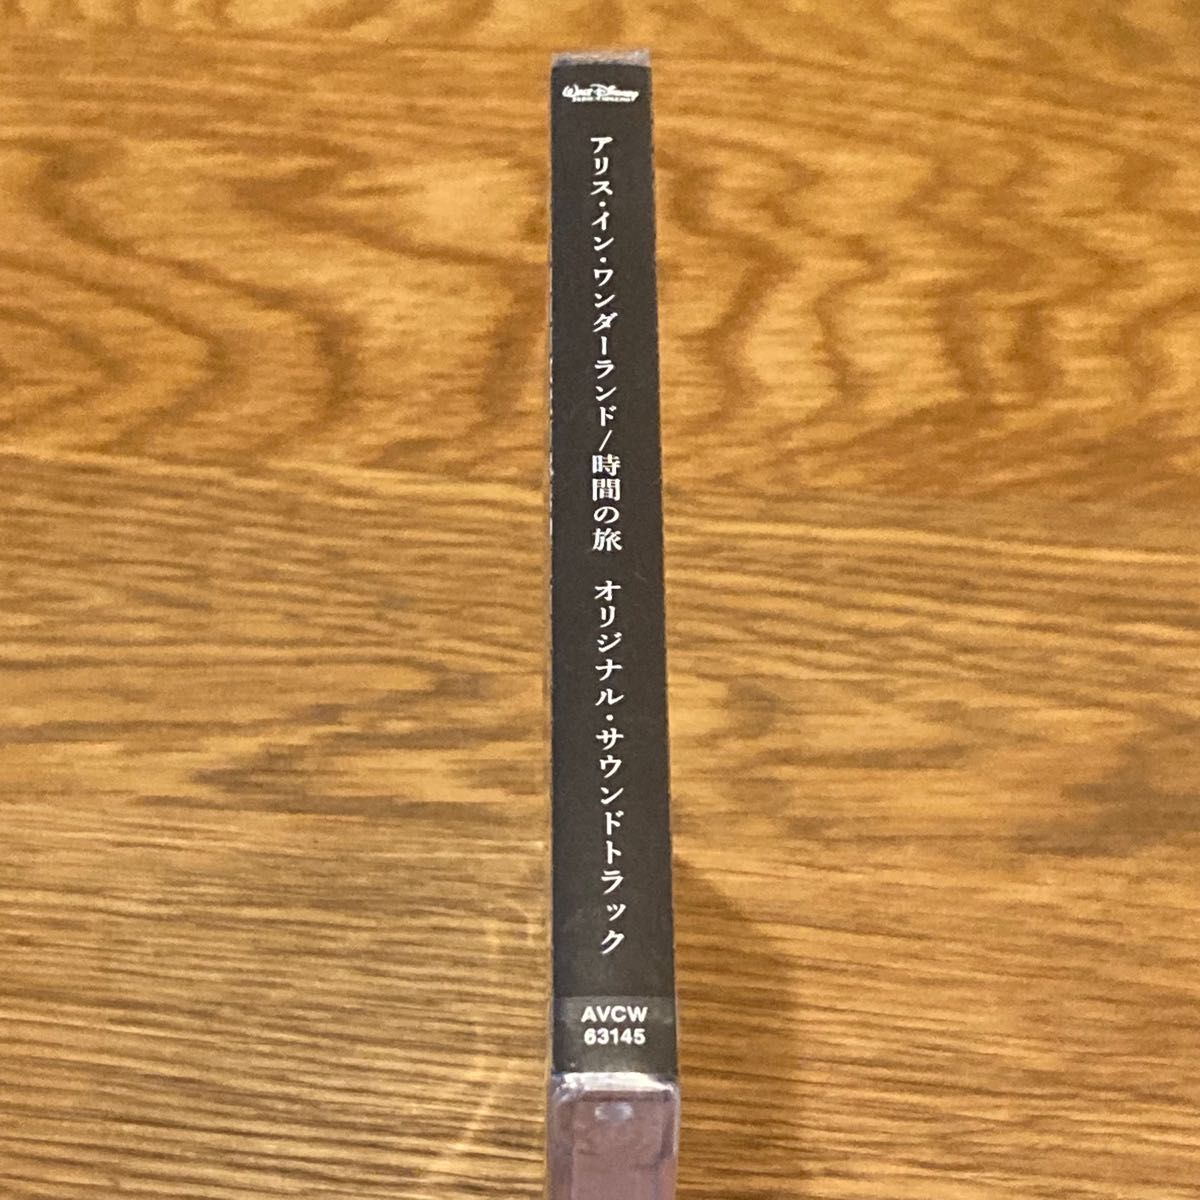 アリス・イン・ワンダーランド/時間の旅 オリジナル・サウンドトラック 【CD】